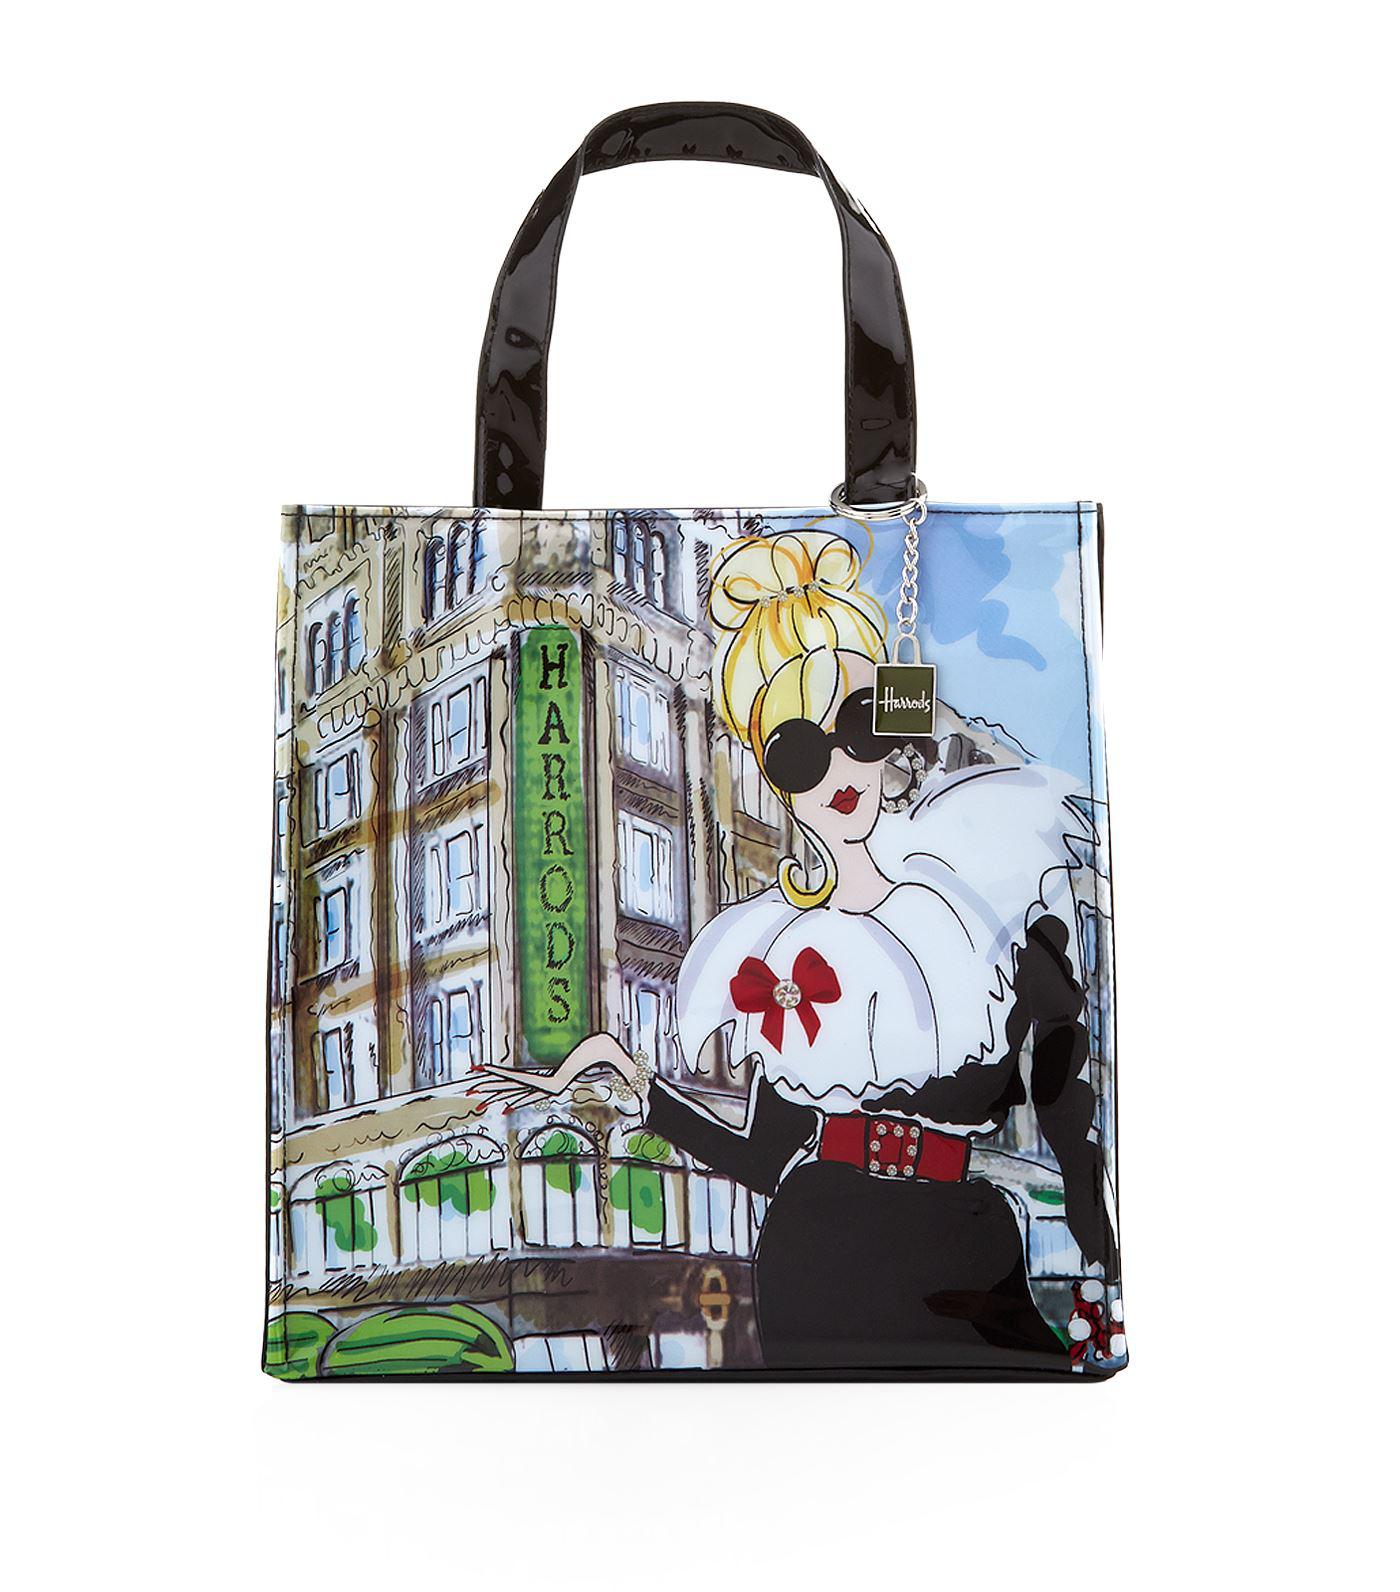 Harrods Small Glamorous Girls Shopper Bag in Gray - Lyst